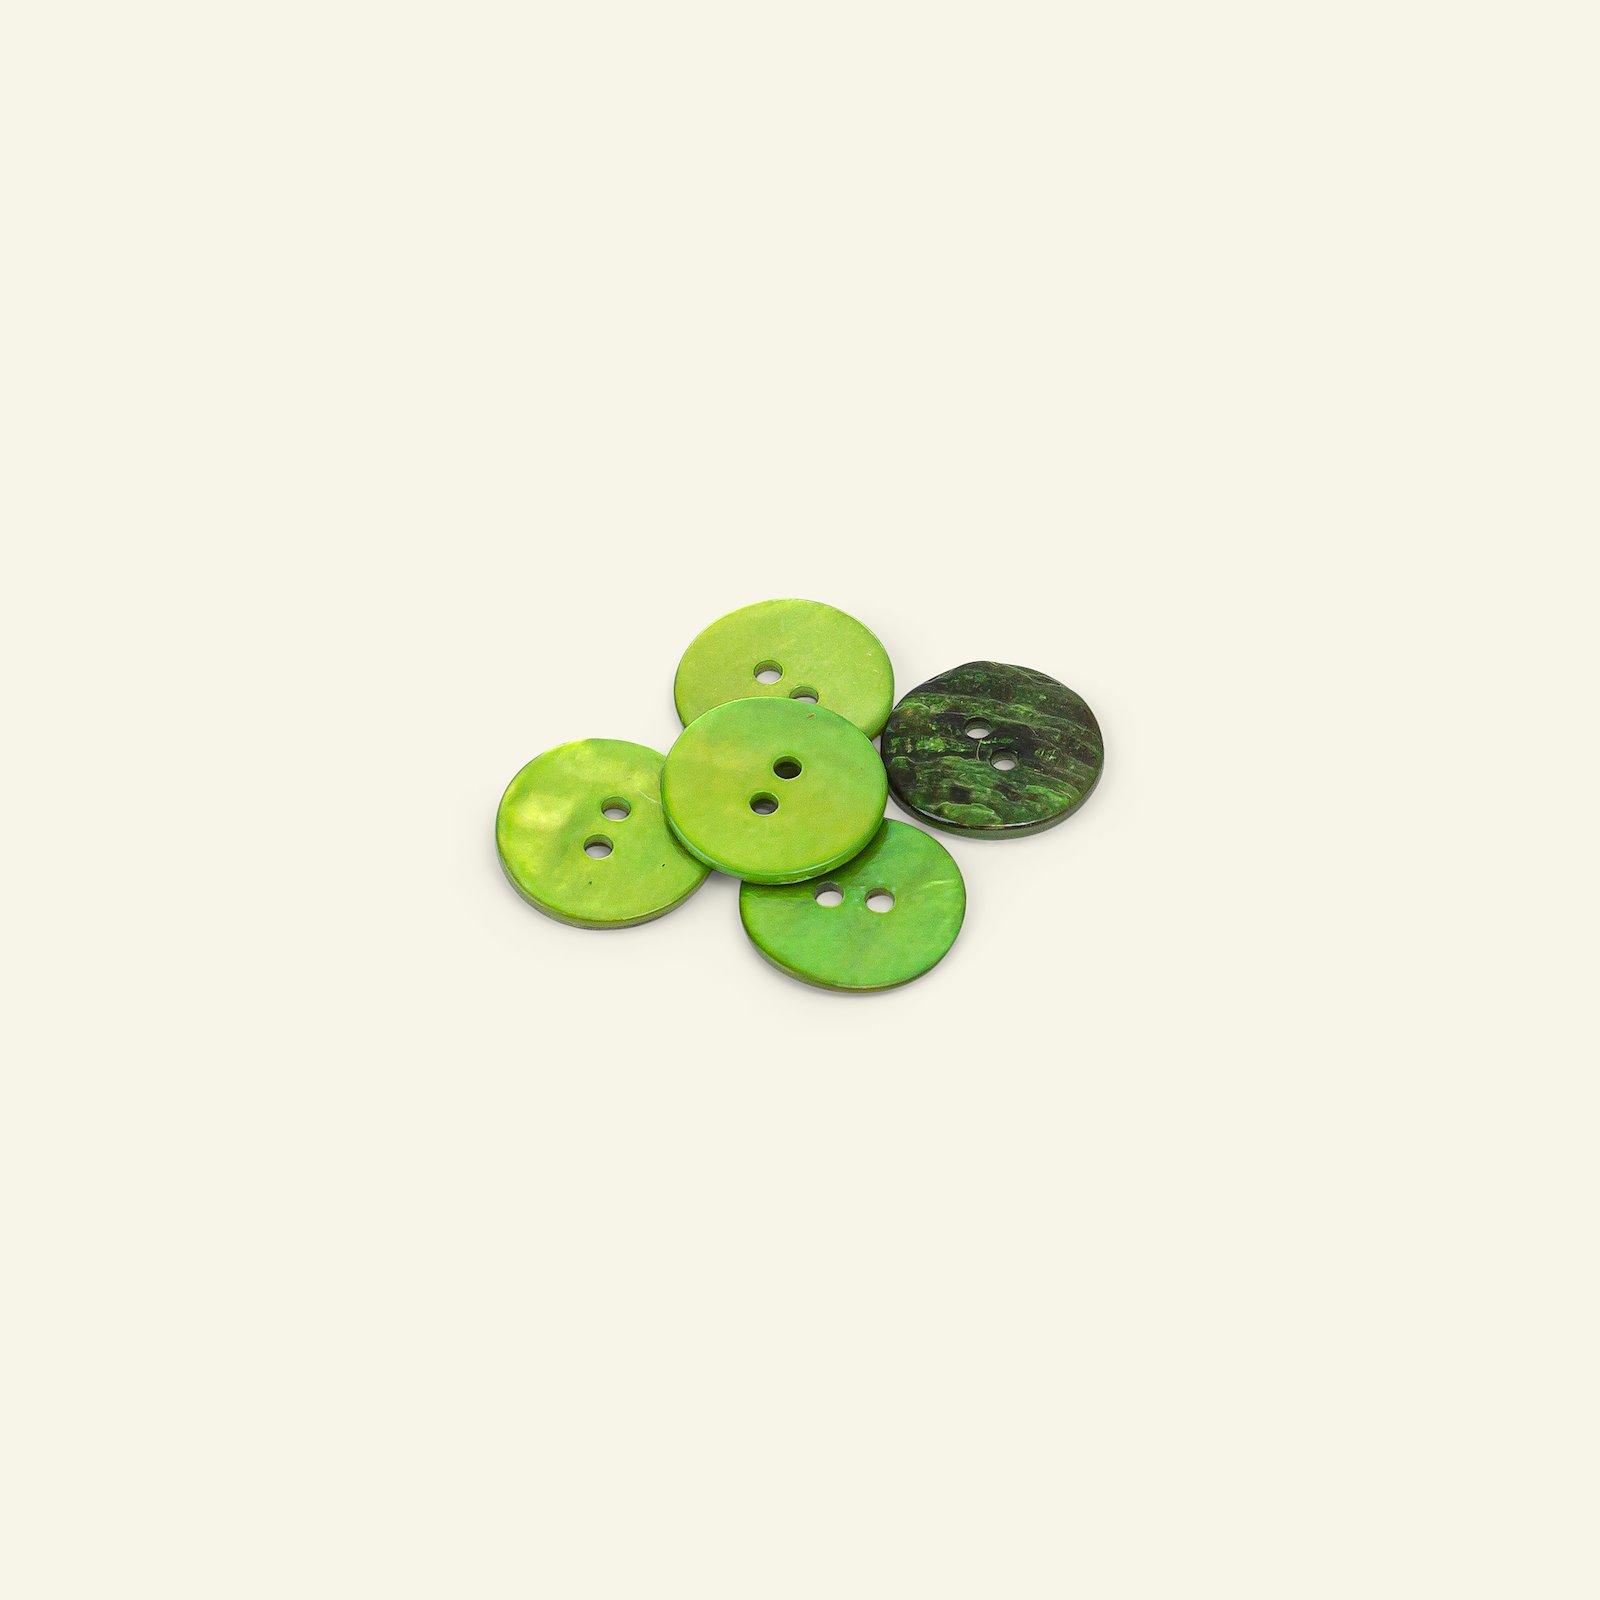 Knap 2-huls perlemor 15mm lime grøn 5stk 33250_pack